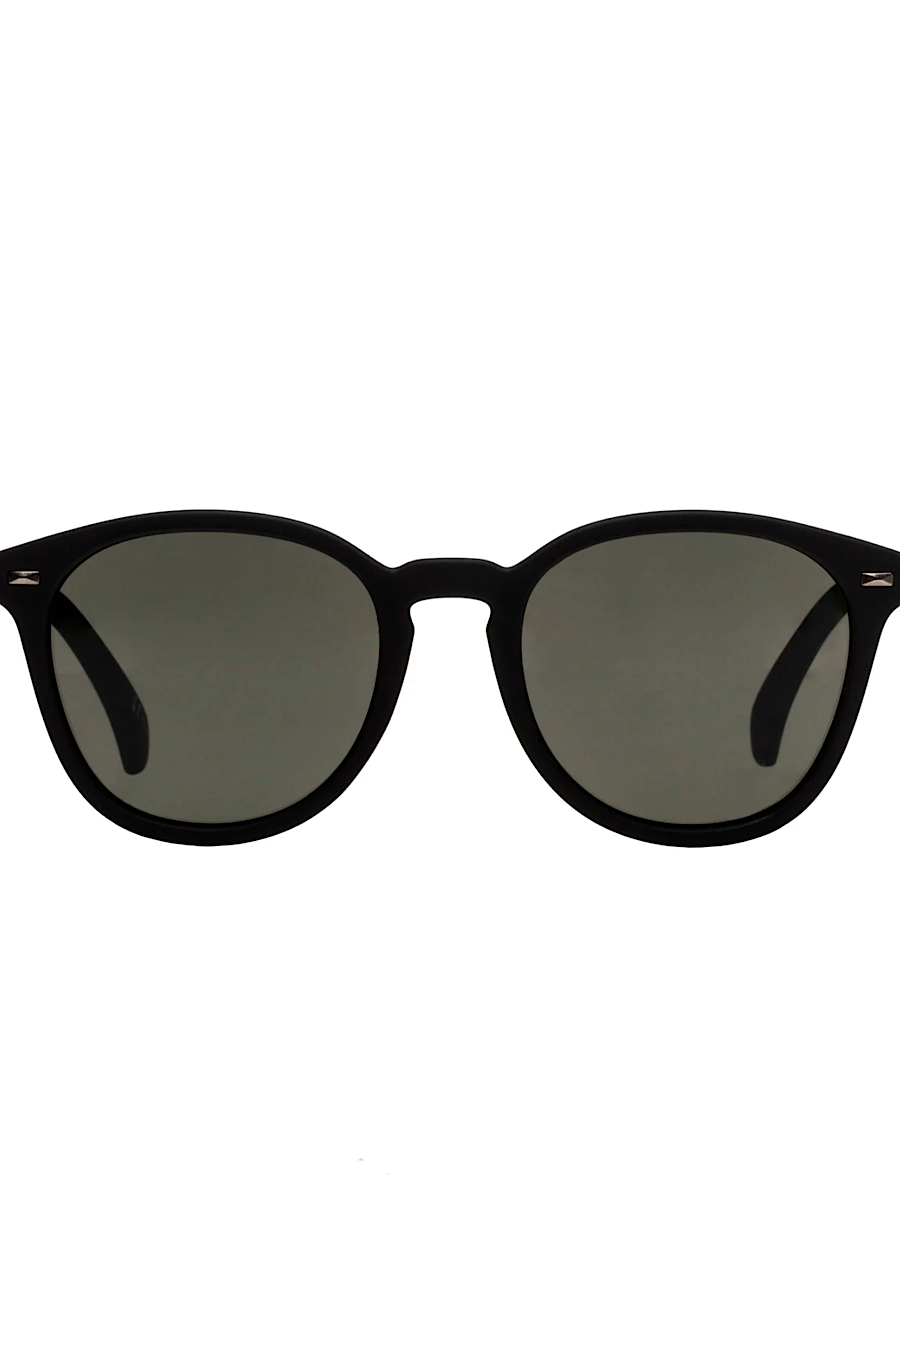 Le Specs Bandwagon Sunglasses in Black Rubber